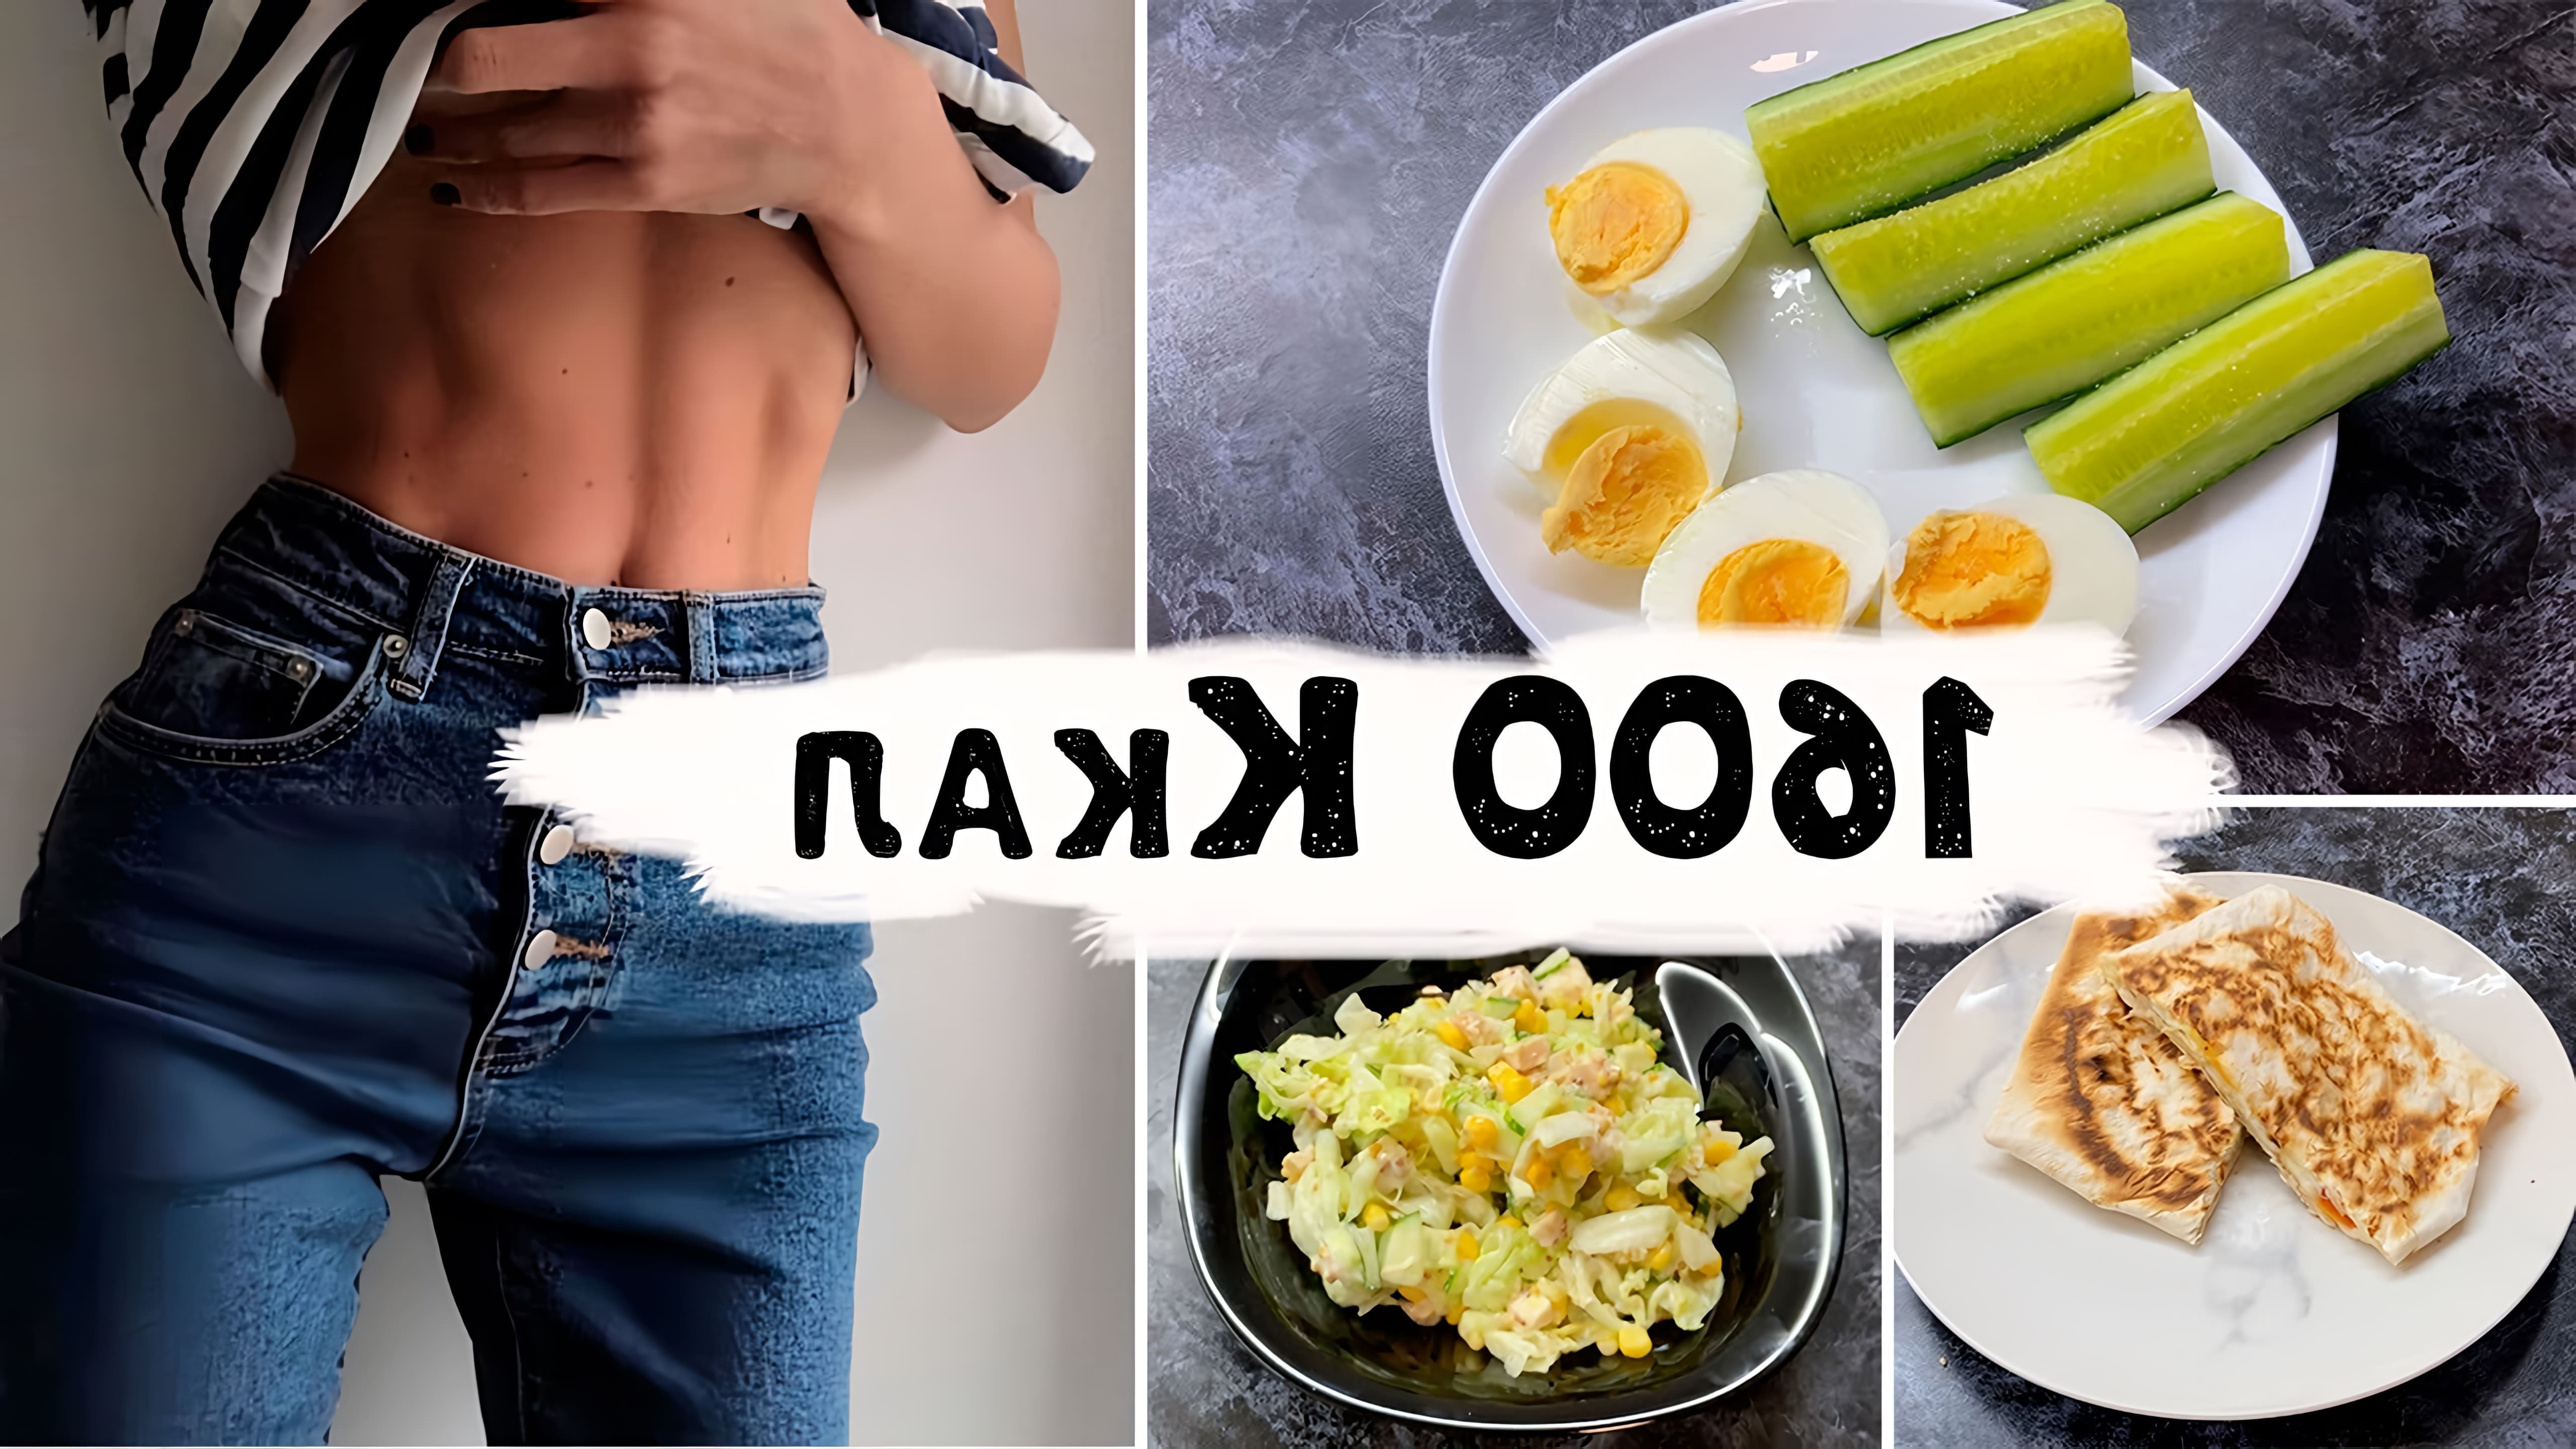 В данном видео-ролике будет представлен примерный рацион питания на день, который поможет похудеть и поддерживать здоровый вес